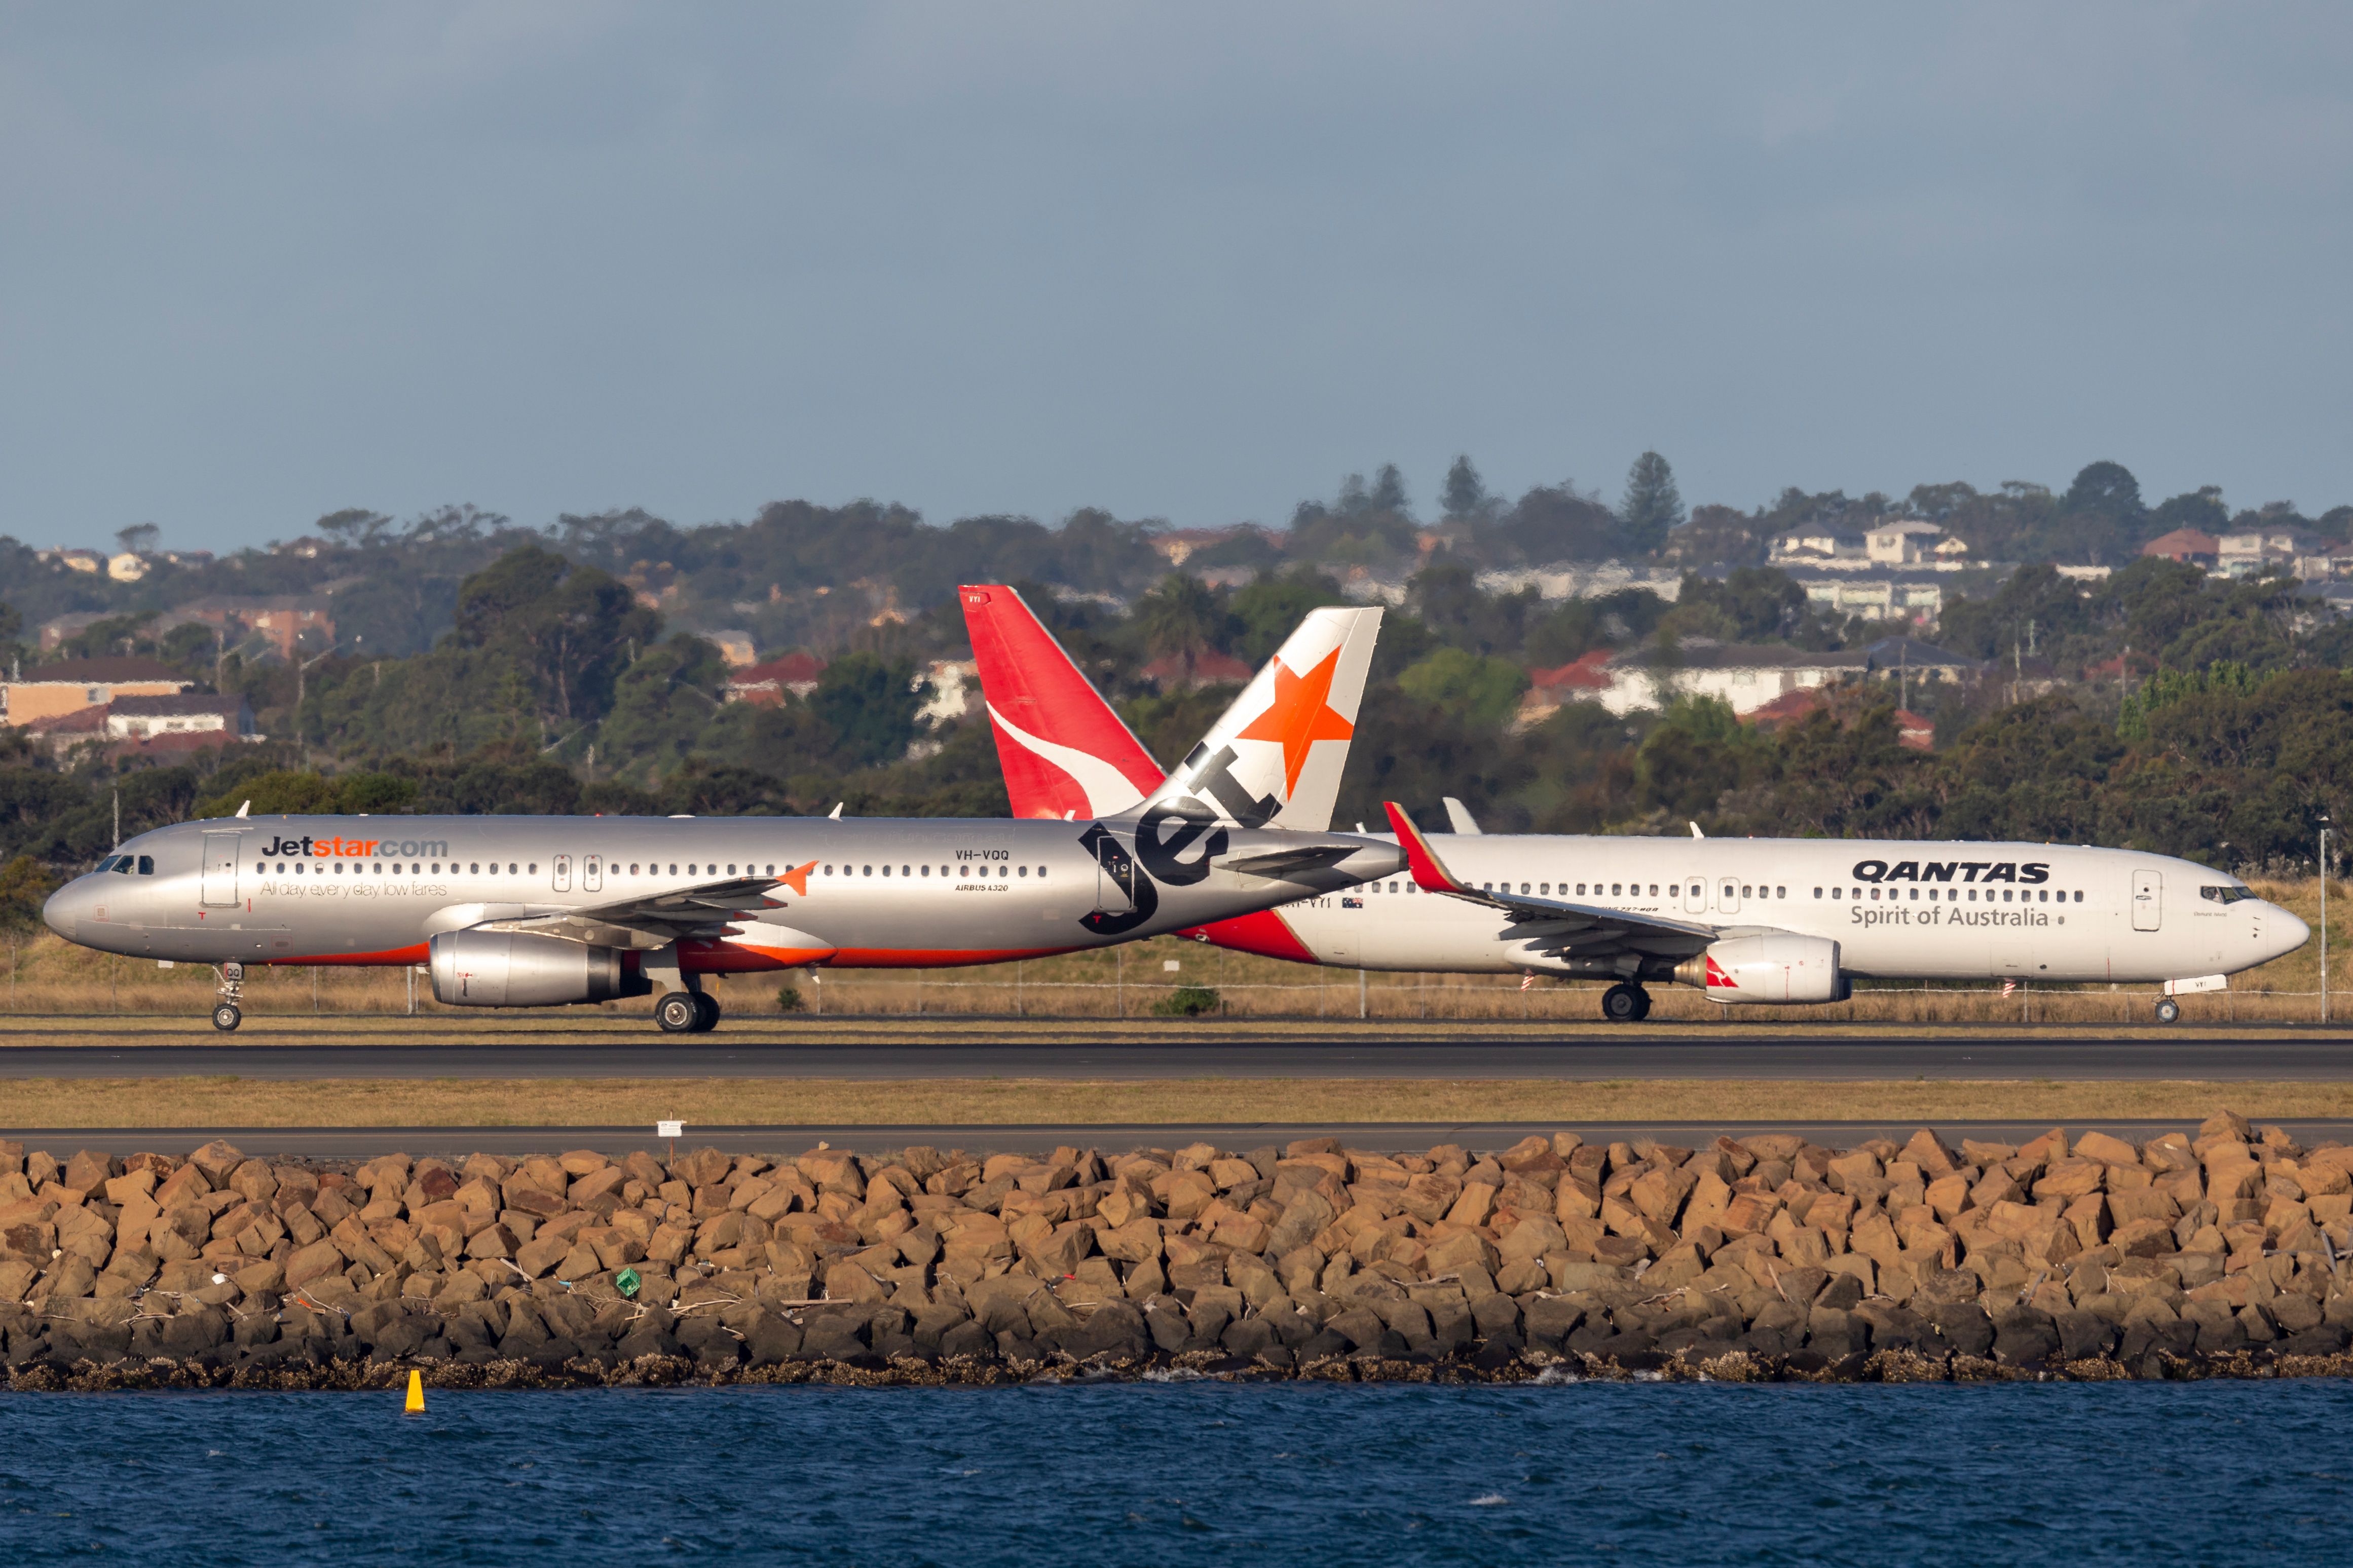 Jetstar A320 Qantas 737 Sydney Airport Lining Up